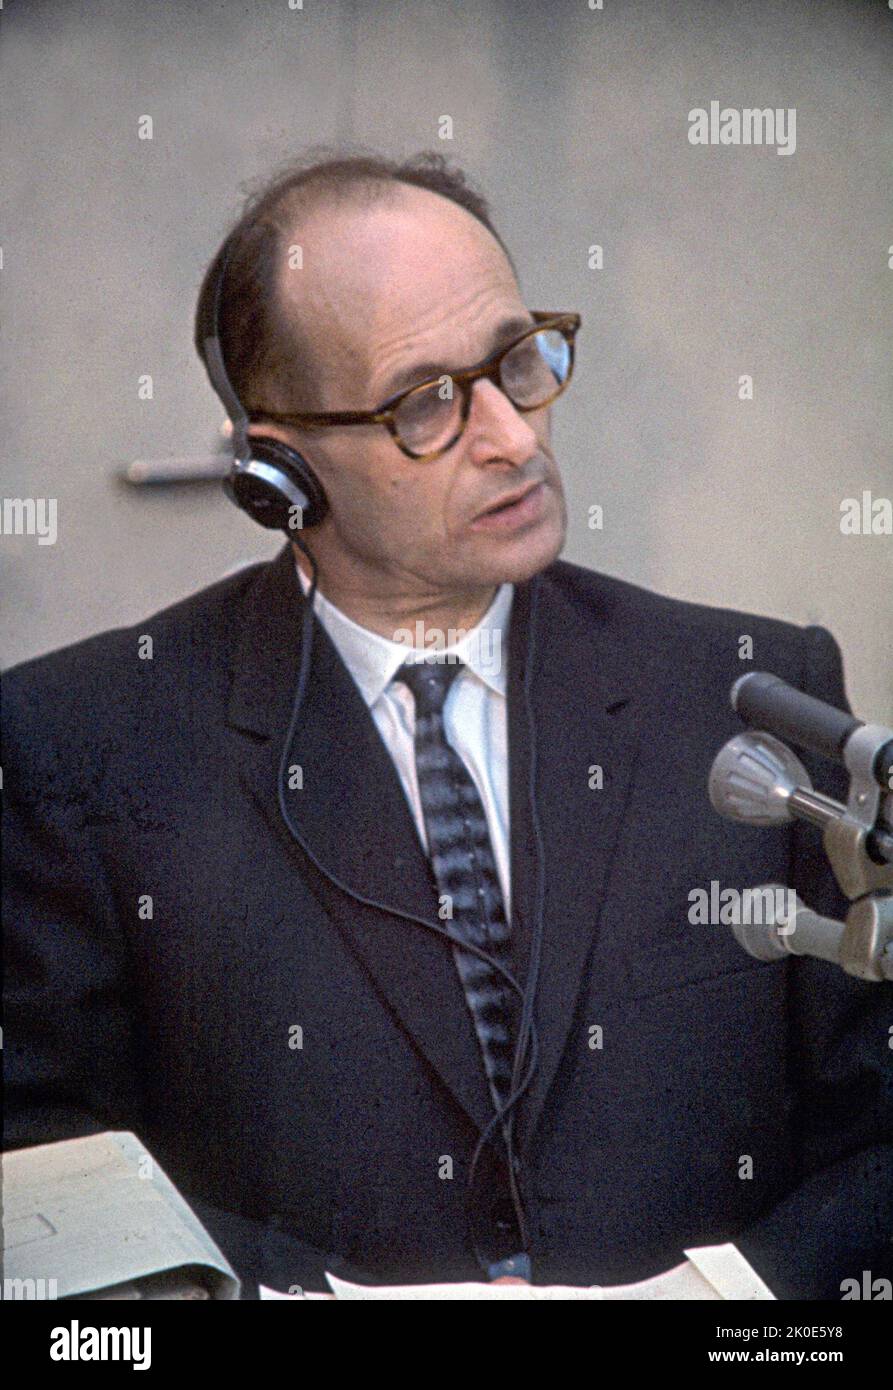 Prozess gegen Adolf Eichmann in Israel 1962. Eichmann (1906. - 1. Juni 1962) war ein deutsch-österreichischer SS-Obersturmbannführer und einer der Hauptorganisatoren des Holocaust (der "Endlösung der jüdischen Frage" in der NS-Terminologie). Eichmann wurde in einem weithin veröffentlichten Prozess in Jerusalem für Kriegsverbrechen verantwortlich gemacht, wo er 1962 durch Erhängen hingerichtet wurde. Stockfoto